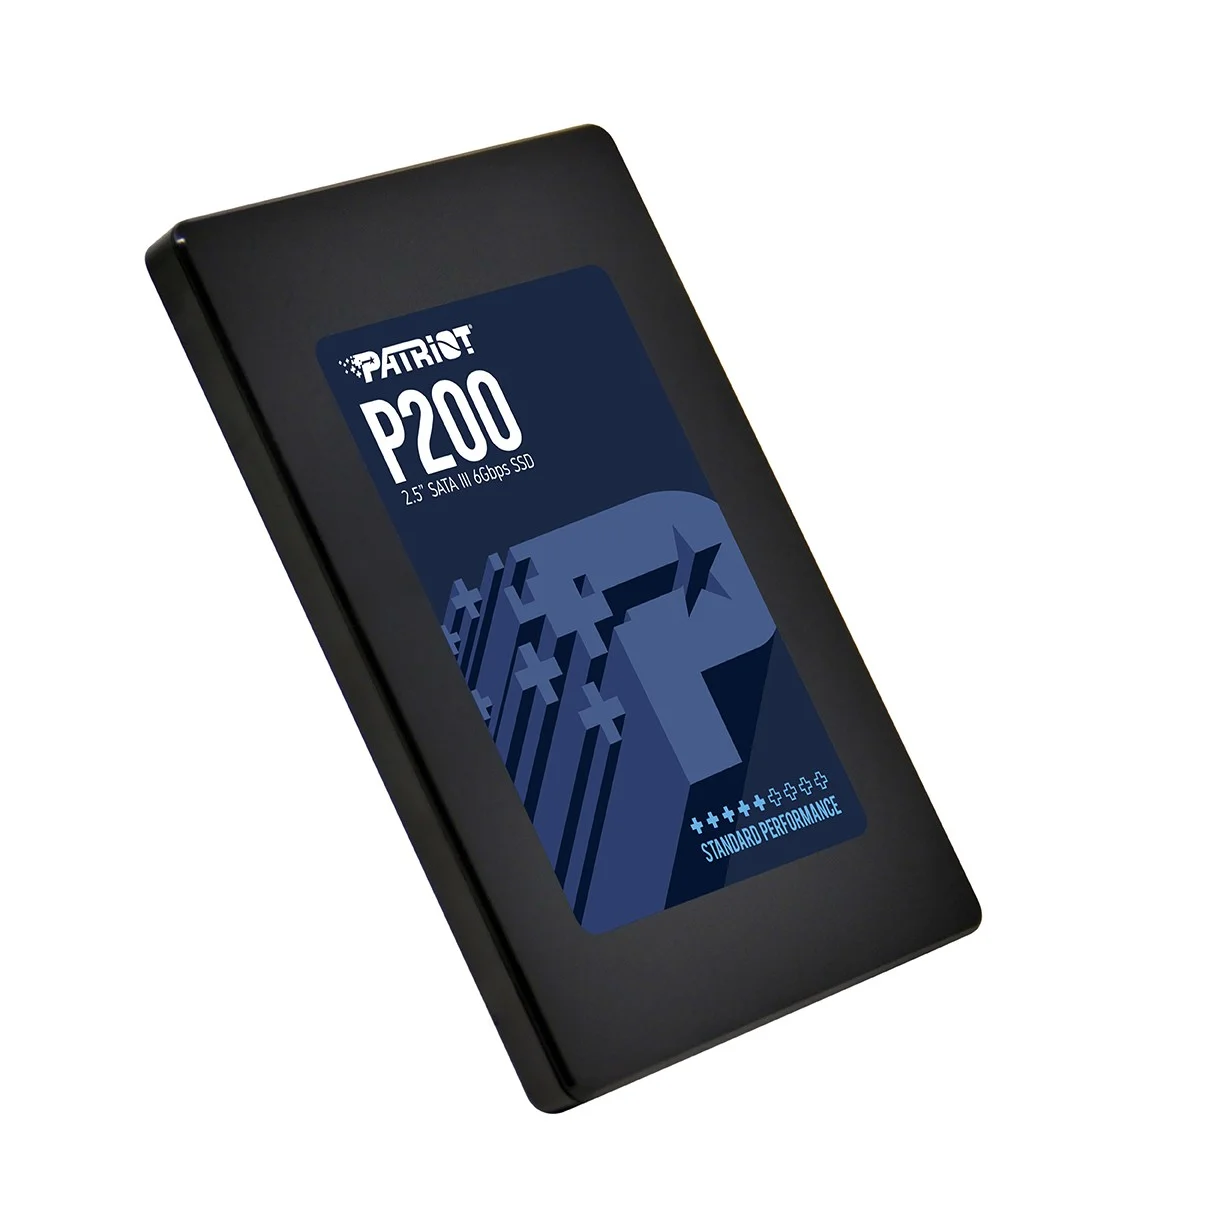 PATRIOT анонсировала выпуск новых SSD P200 - фото 1